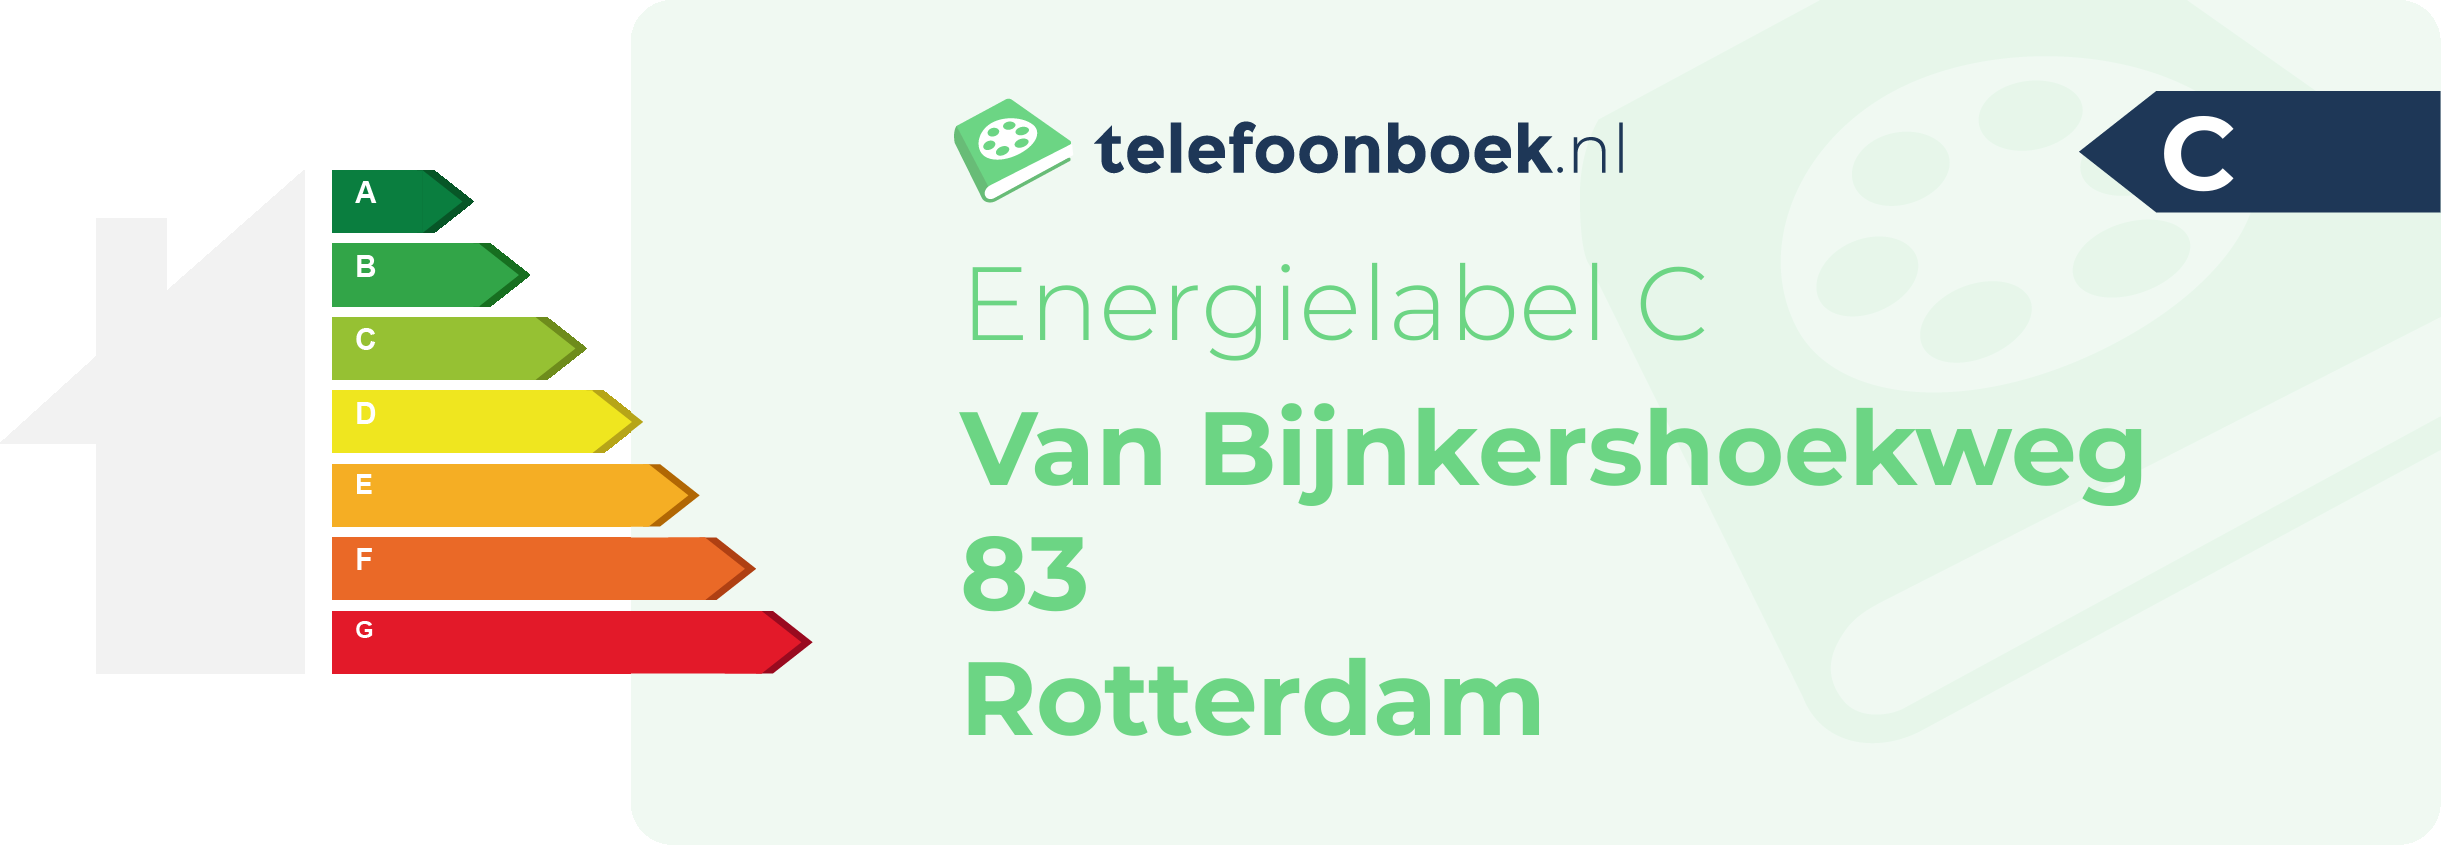 Energielabel Van Bijnkershoekweg 83 Rotterdam